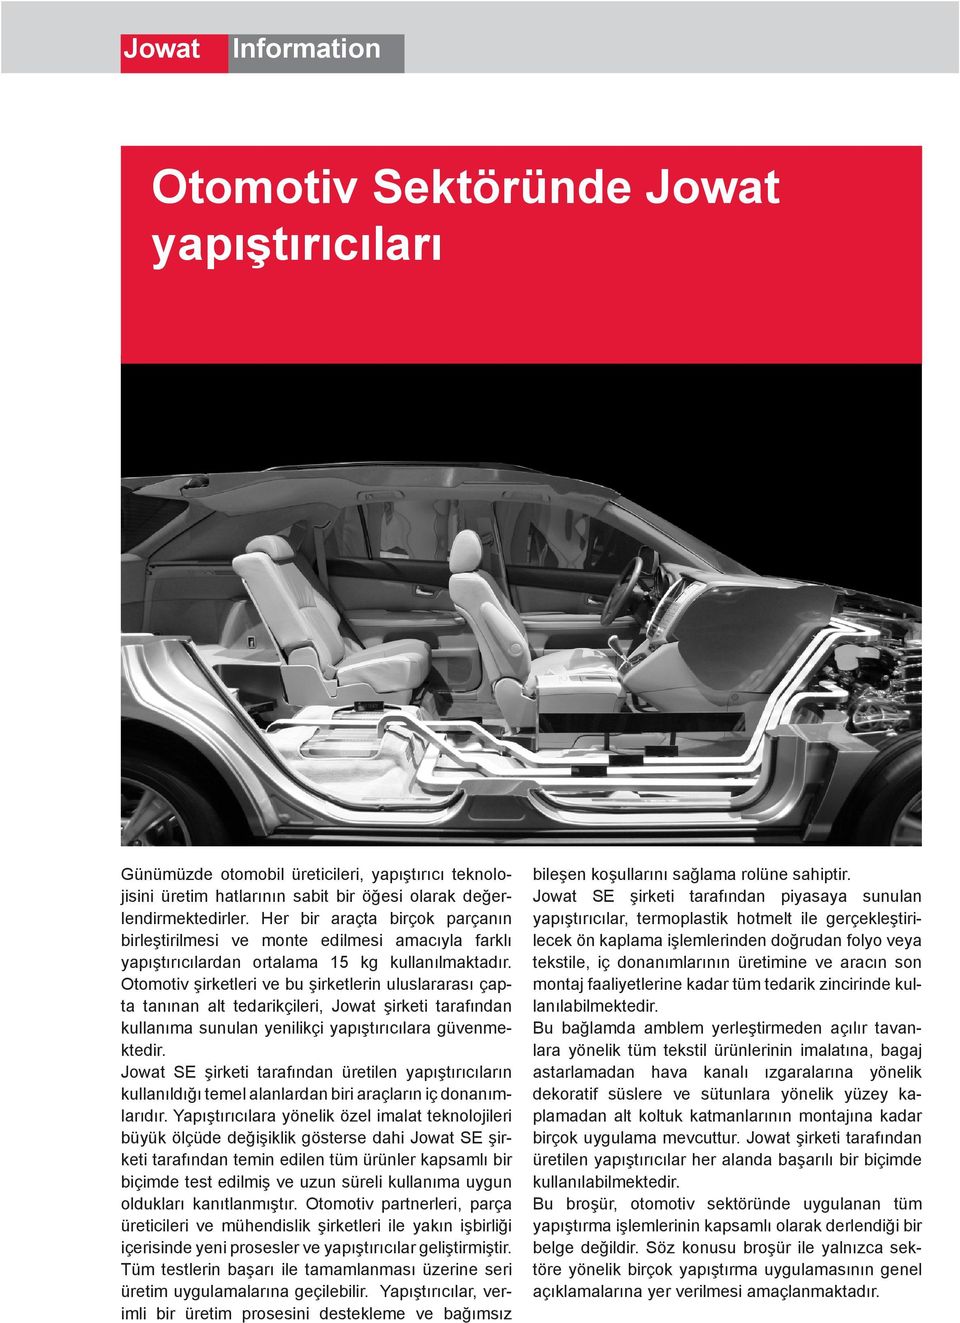 Otomotiv şirketleri ve bu şirketlerin uluslararası çapta tanınan alt tedarikçileri, Jowat şirketi tarafından kullanıma sunulan yenilikçi yapıştırıcılara güvenmektedir.